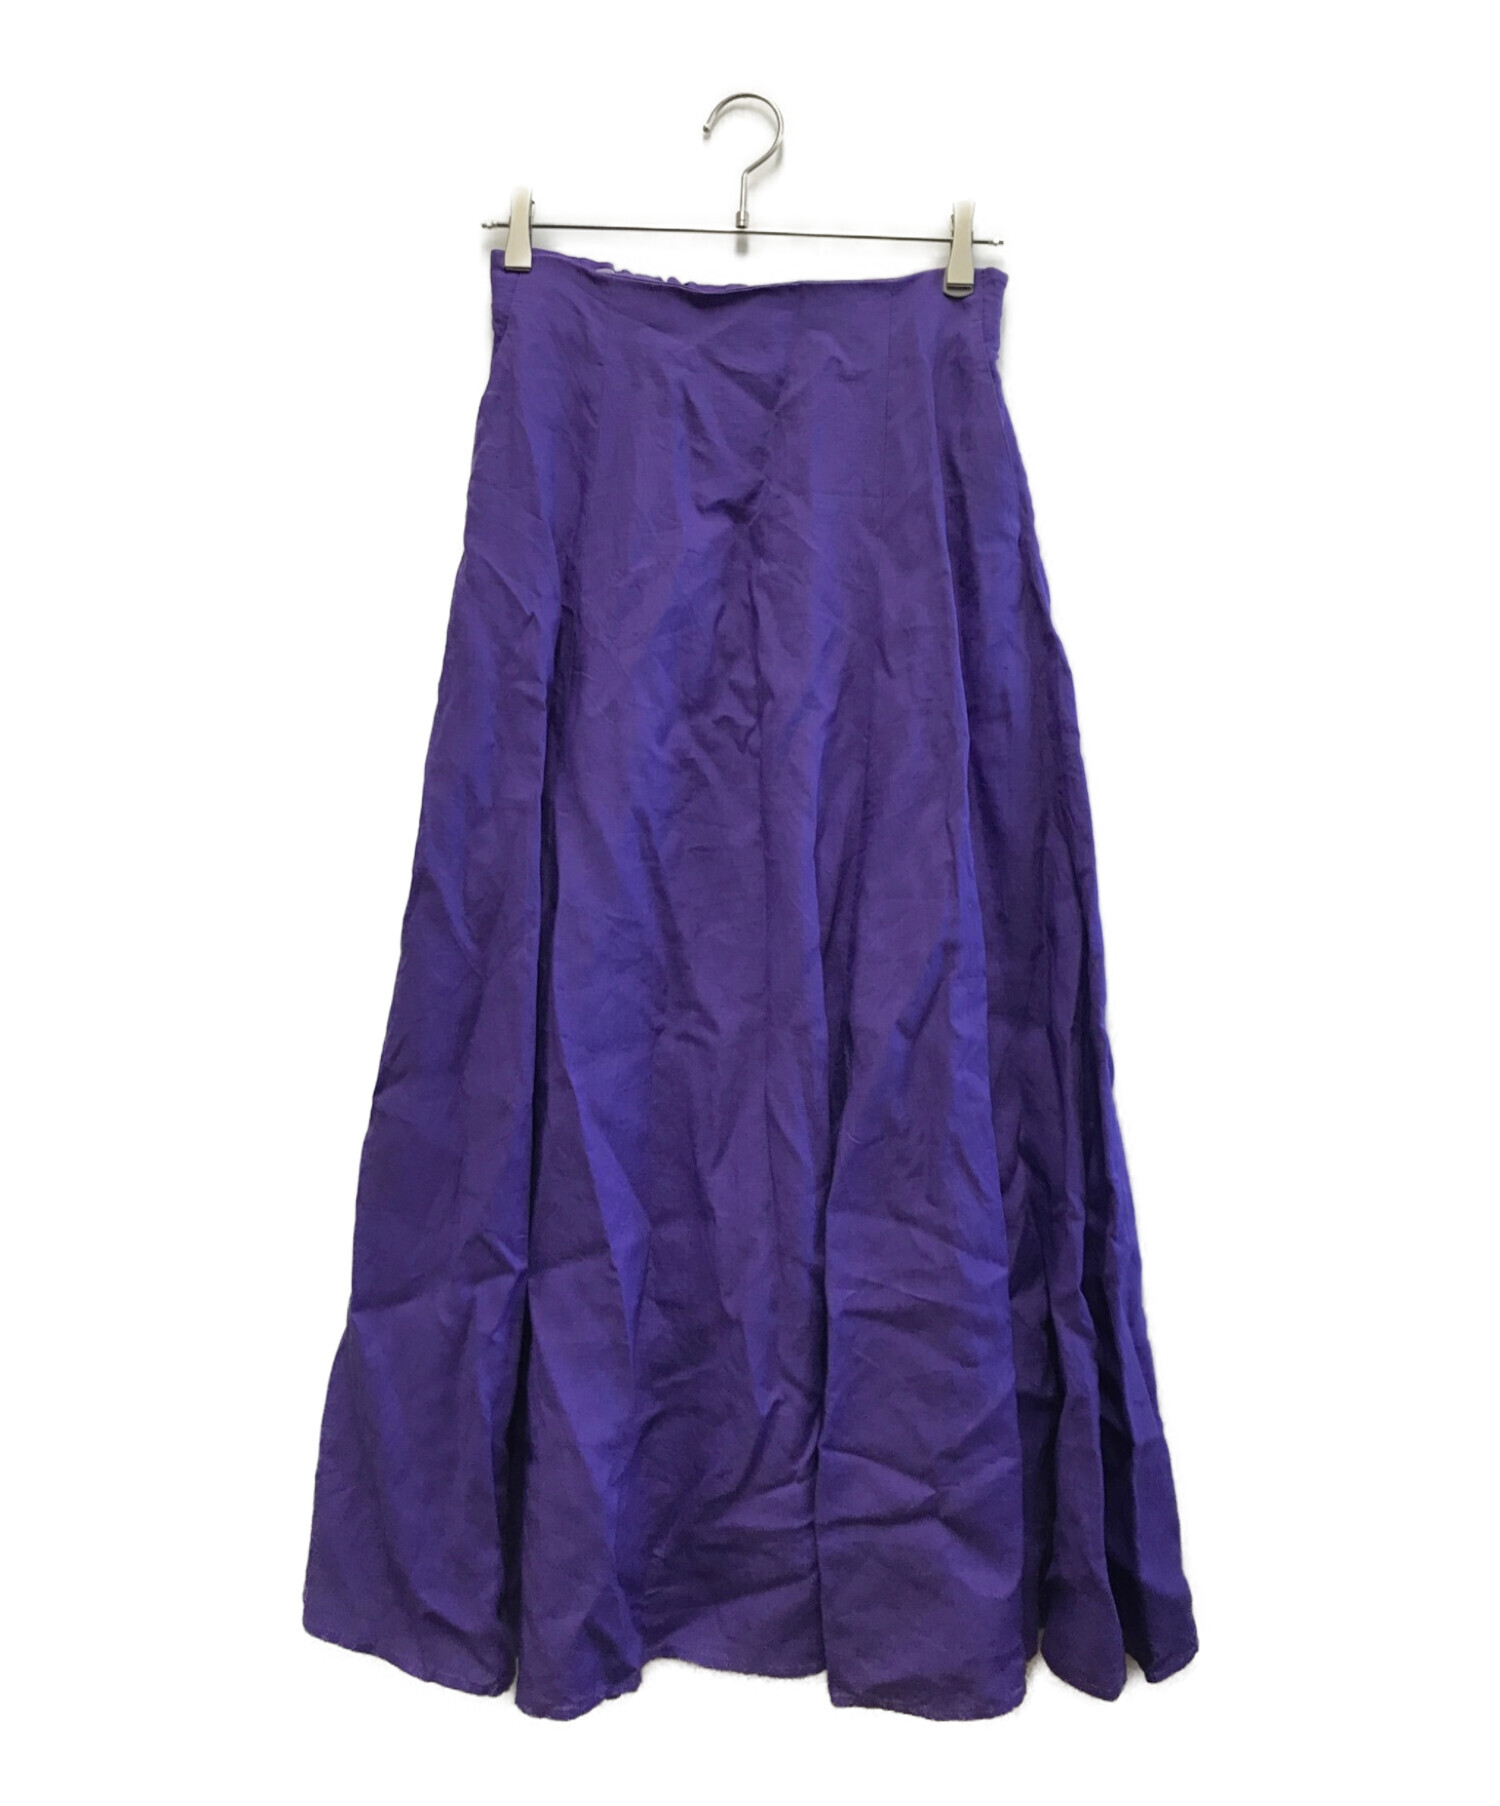 UNITED ARROWS (ユナイテッドアローズ) リネンスカート パープル サイズ:40 未使用品